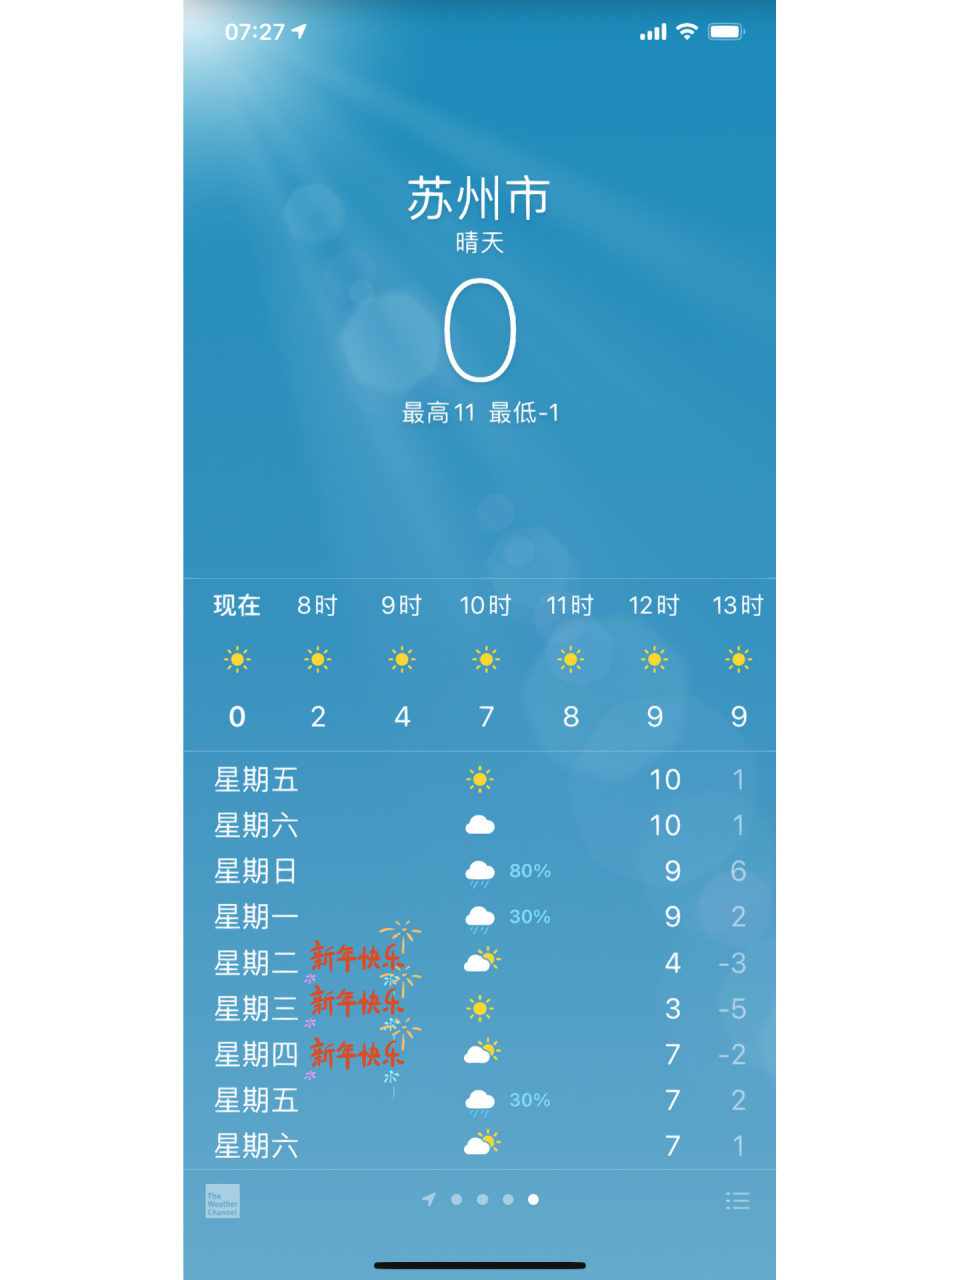 苏州天气 年初三要去苏州旅行啦 我在青岛现在是天天羽绒服的